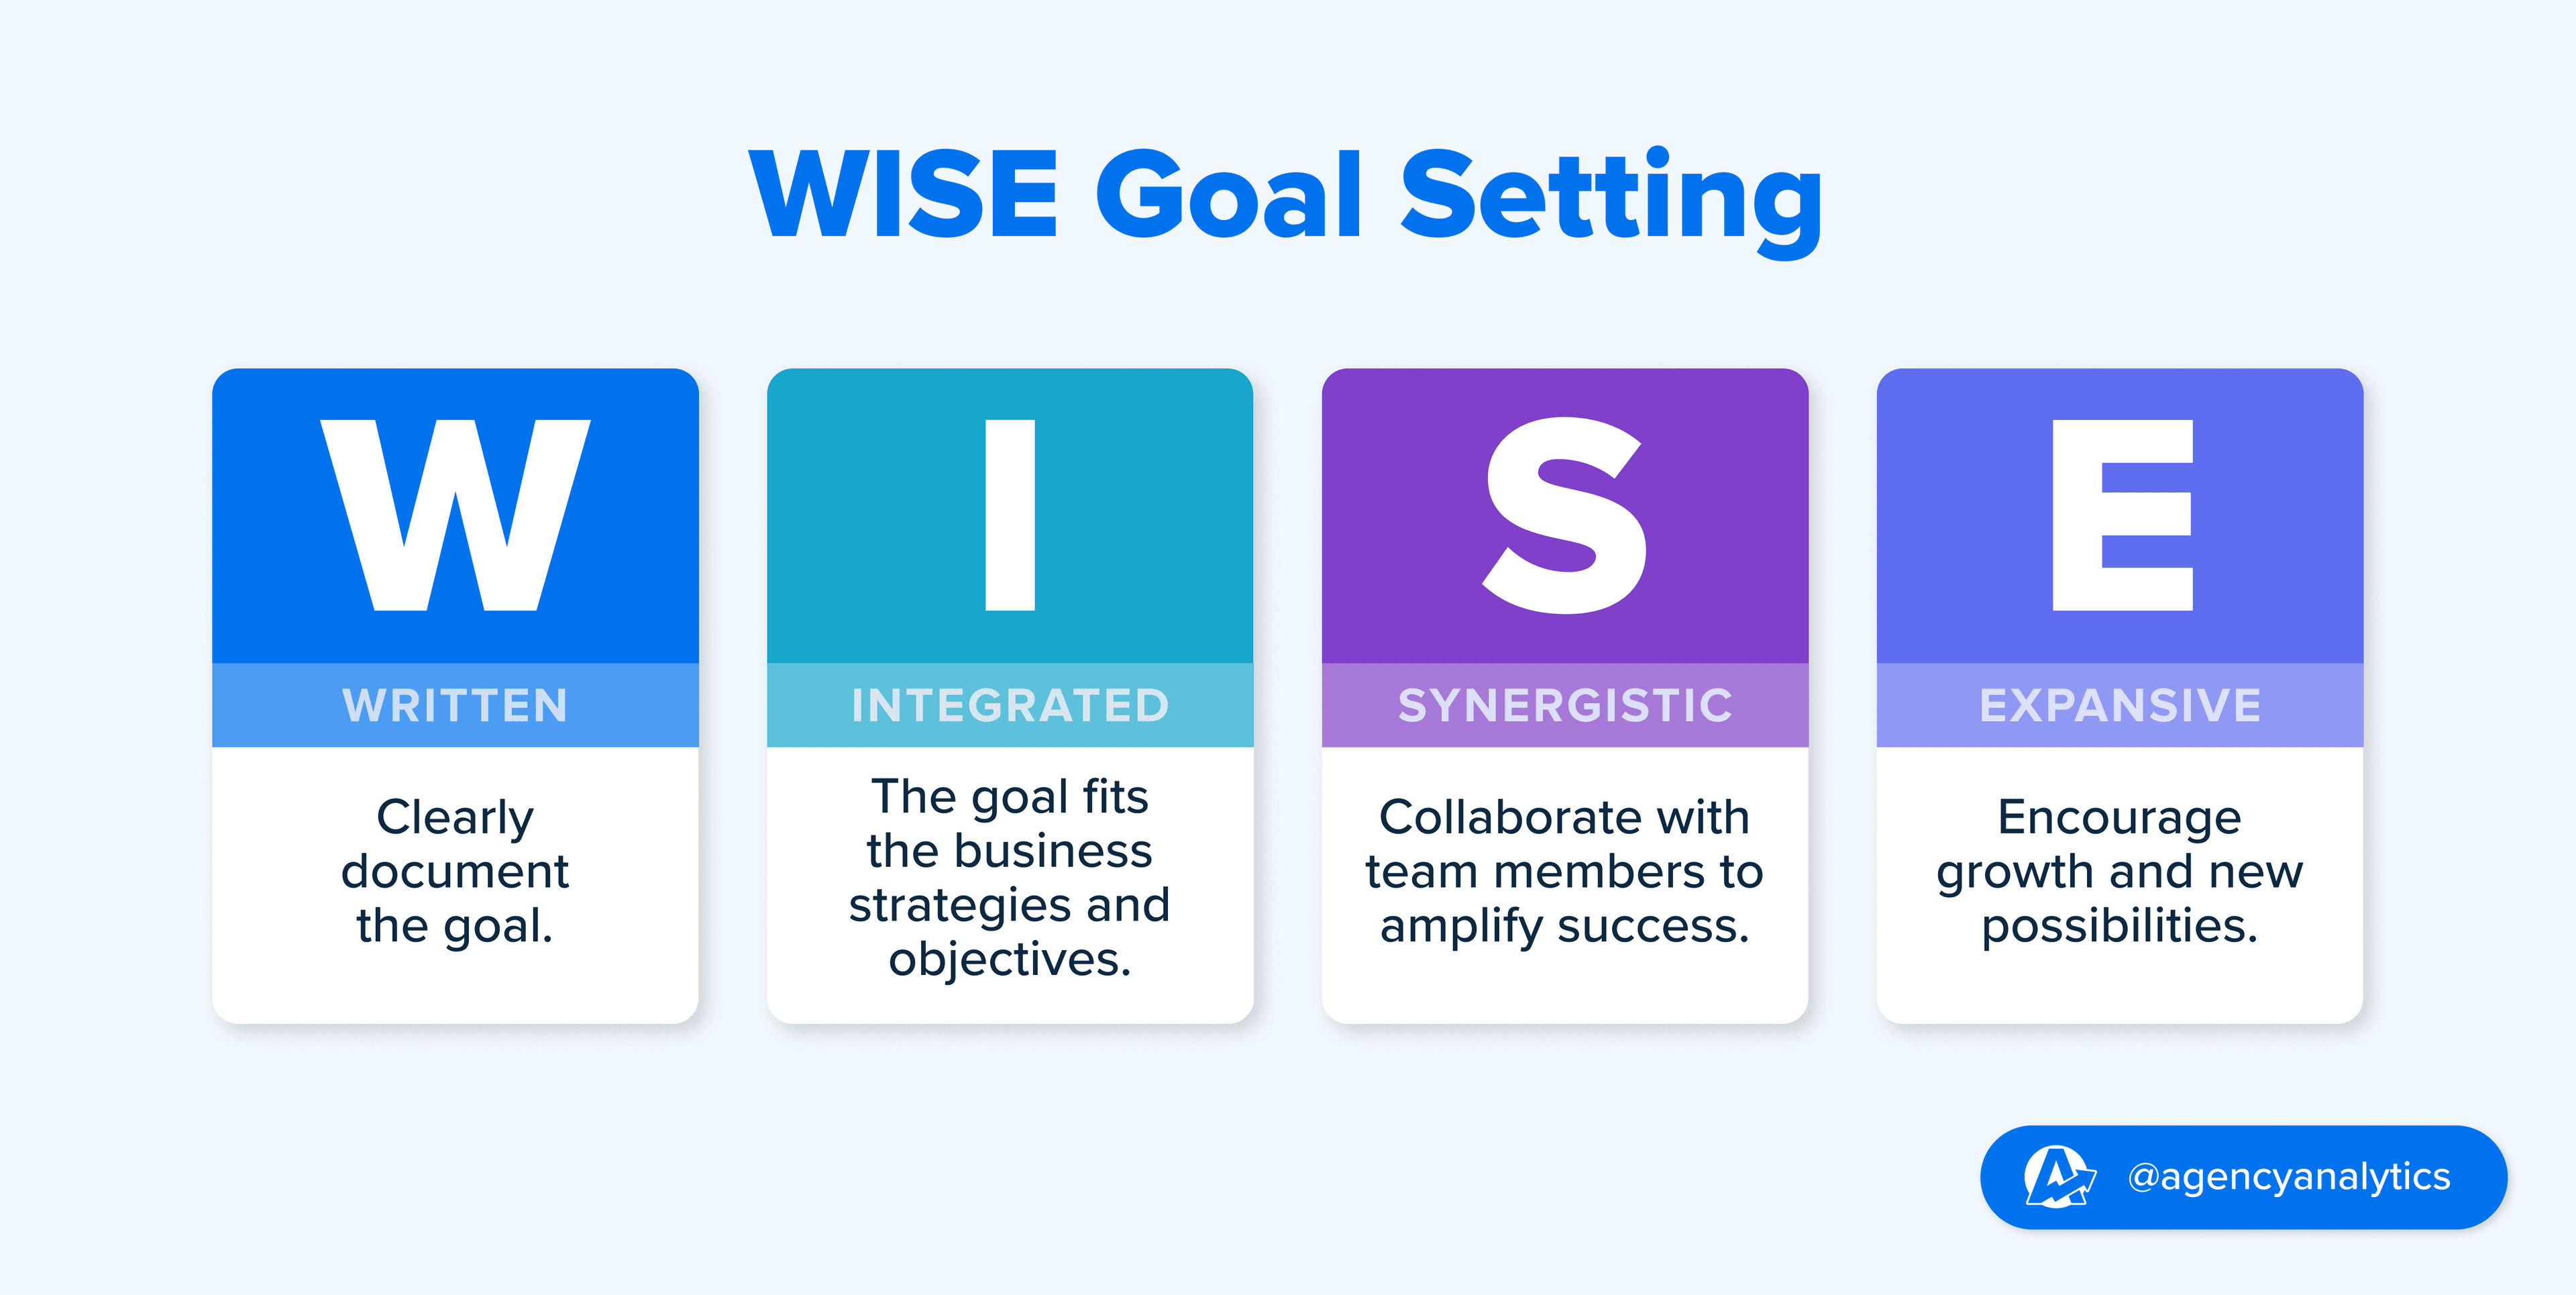 WISE Goals Definition